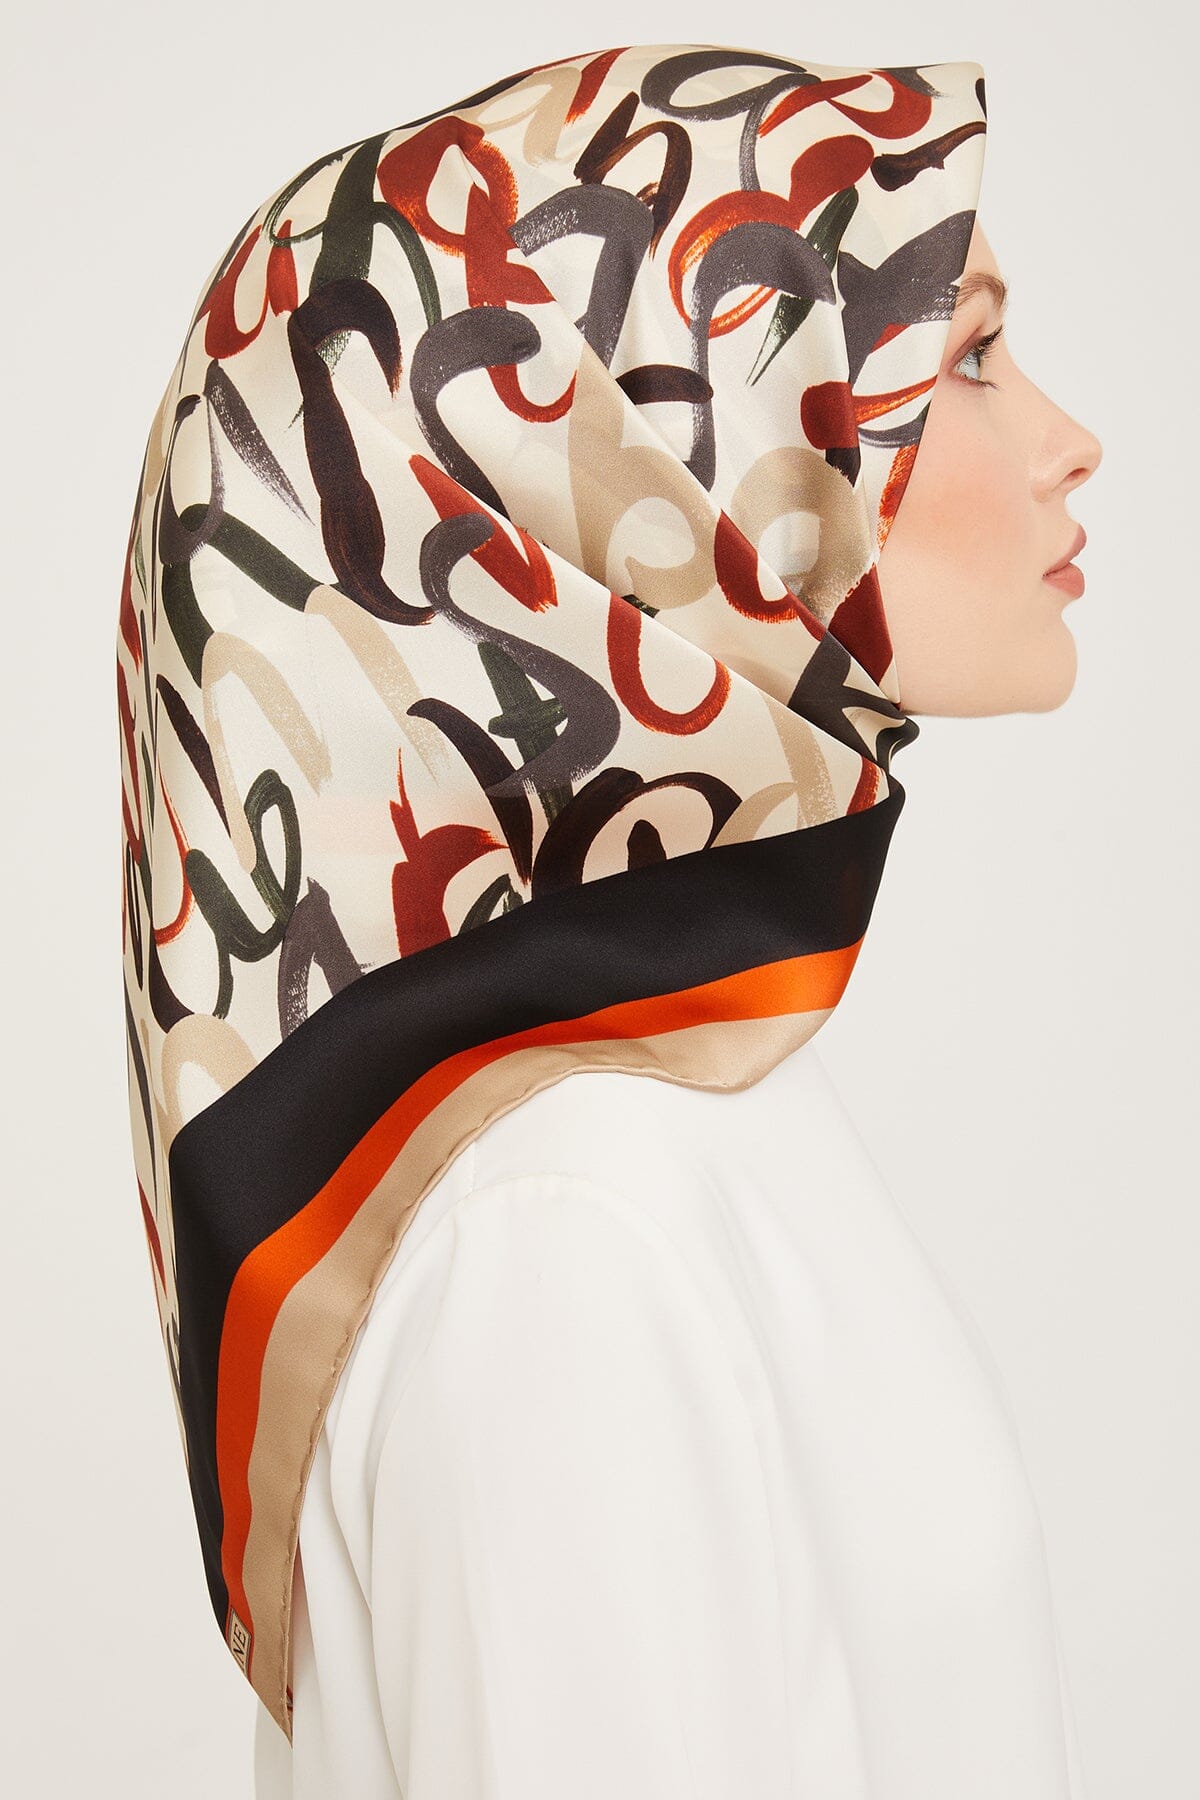 Armine Nudle Designer Silk Scarf #37 Silk Hijabs,Armine Armine 